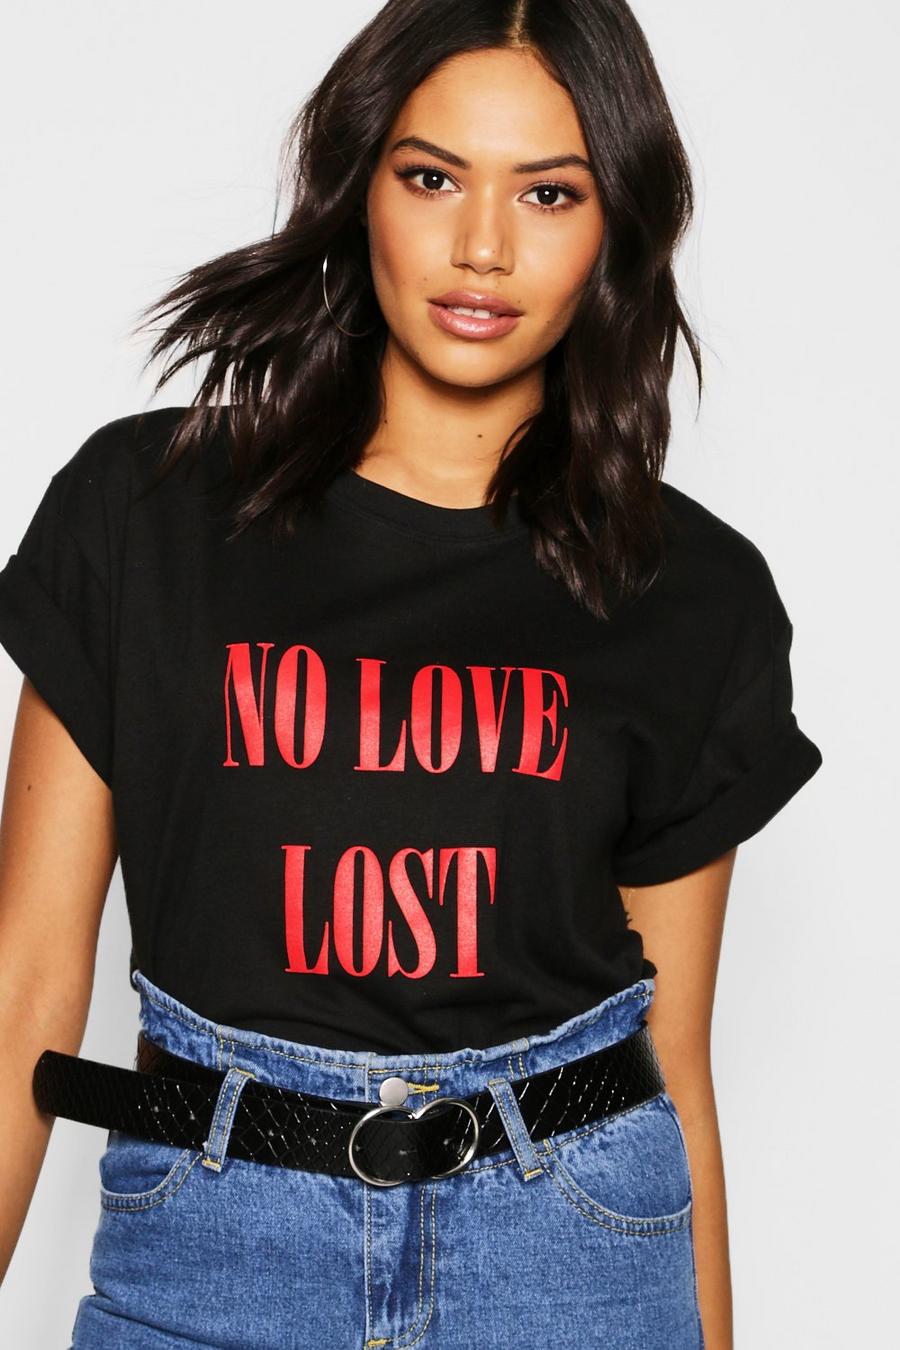 Camiseta con eslogan "No Love Lost" image number 1